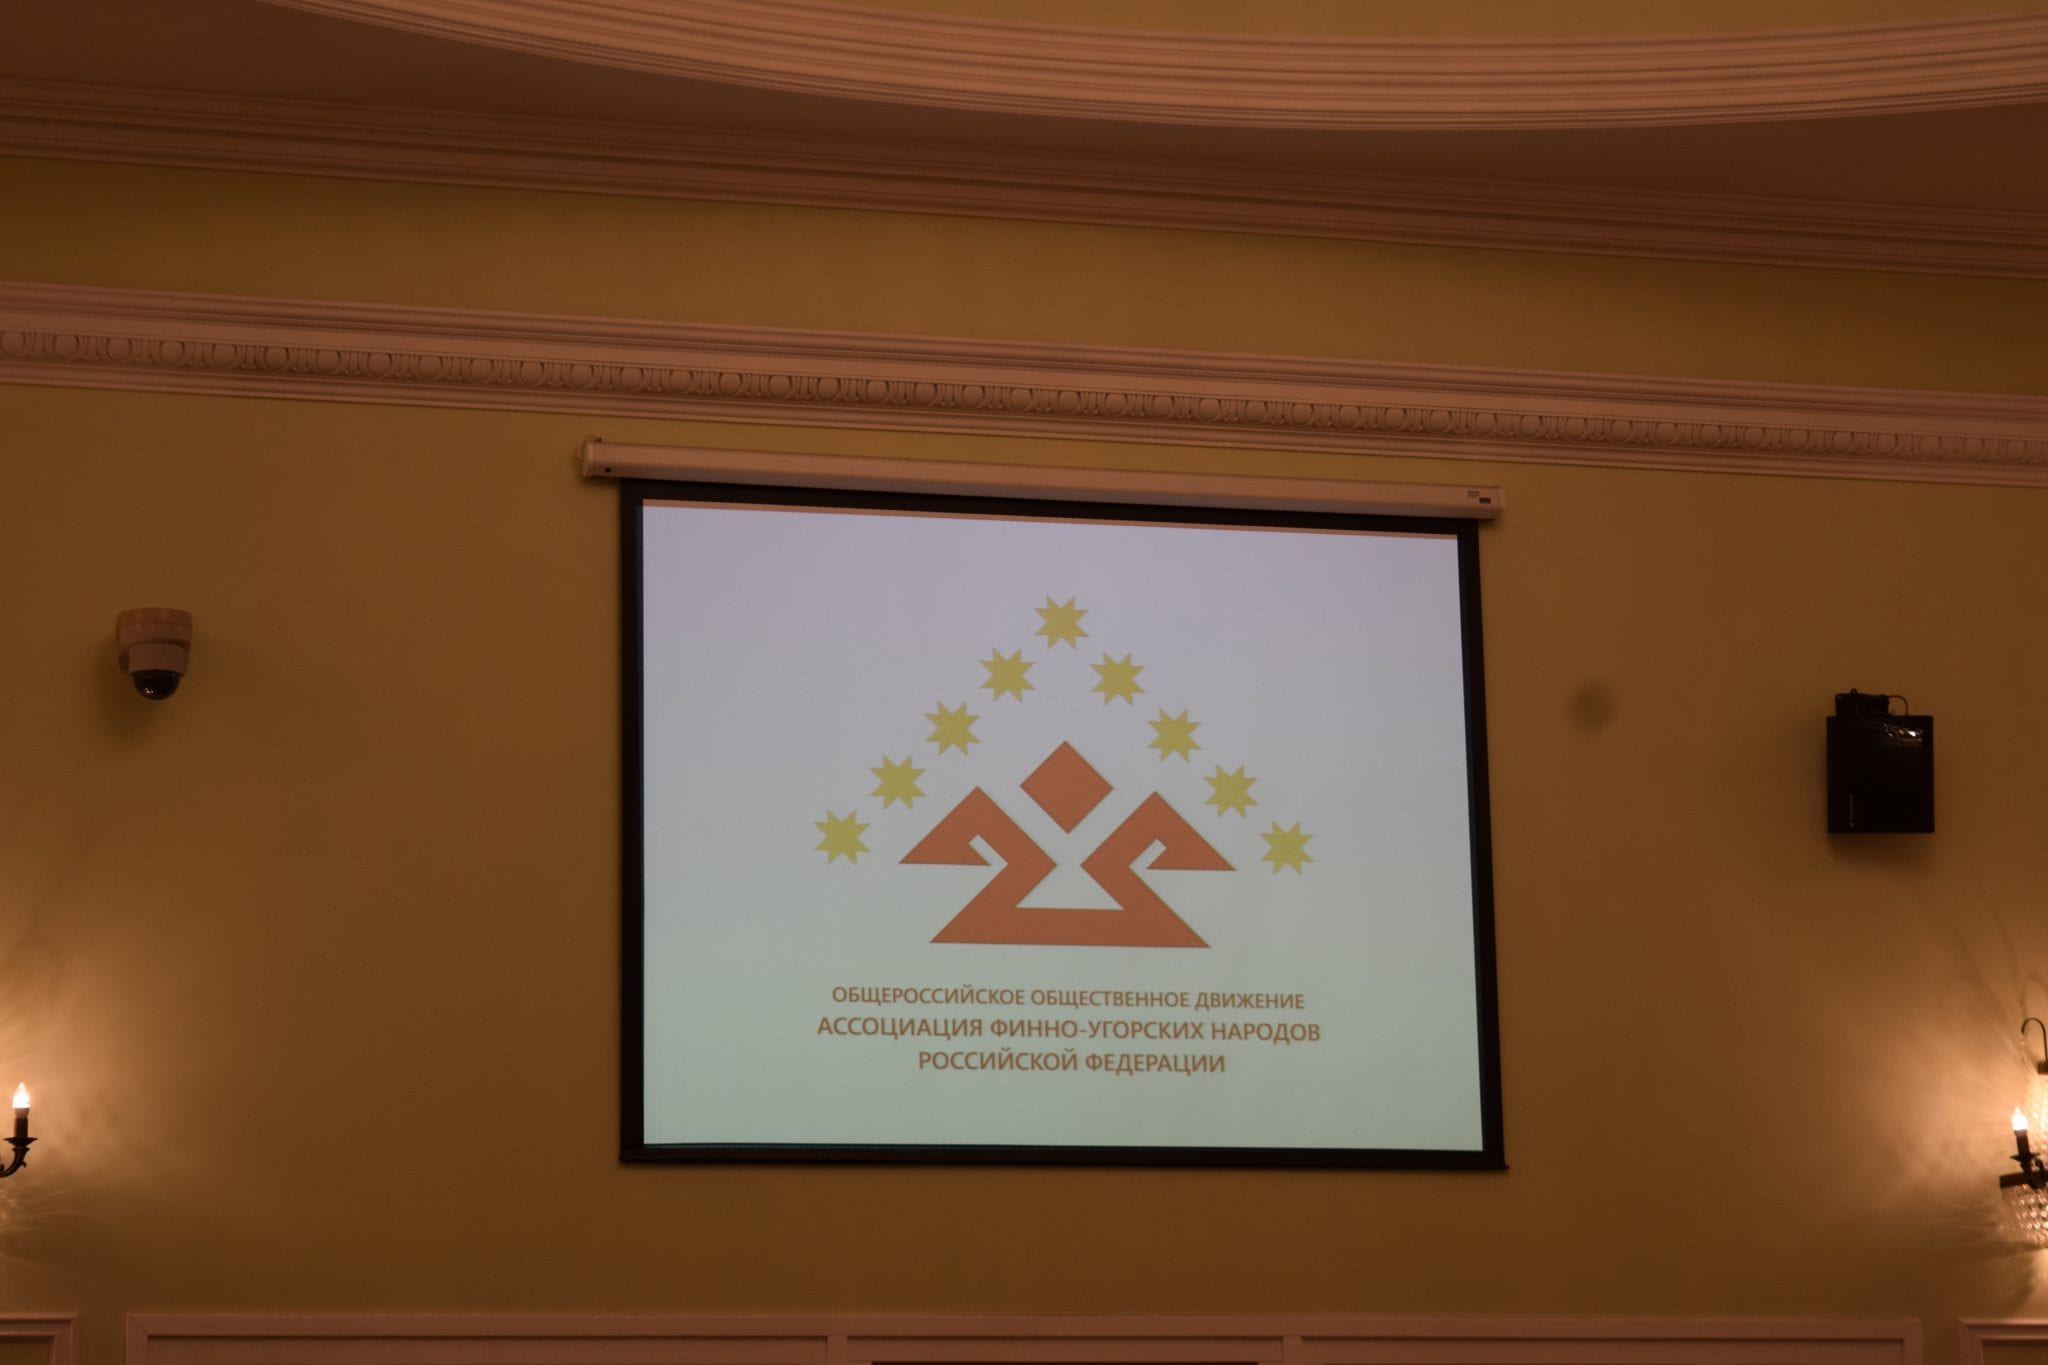 Визит членов президиума общероссийской ассоциации финно-угорских народов в удмуртию 8